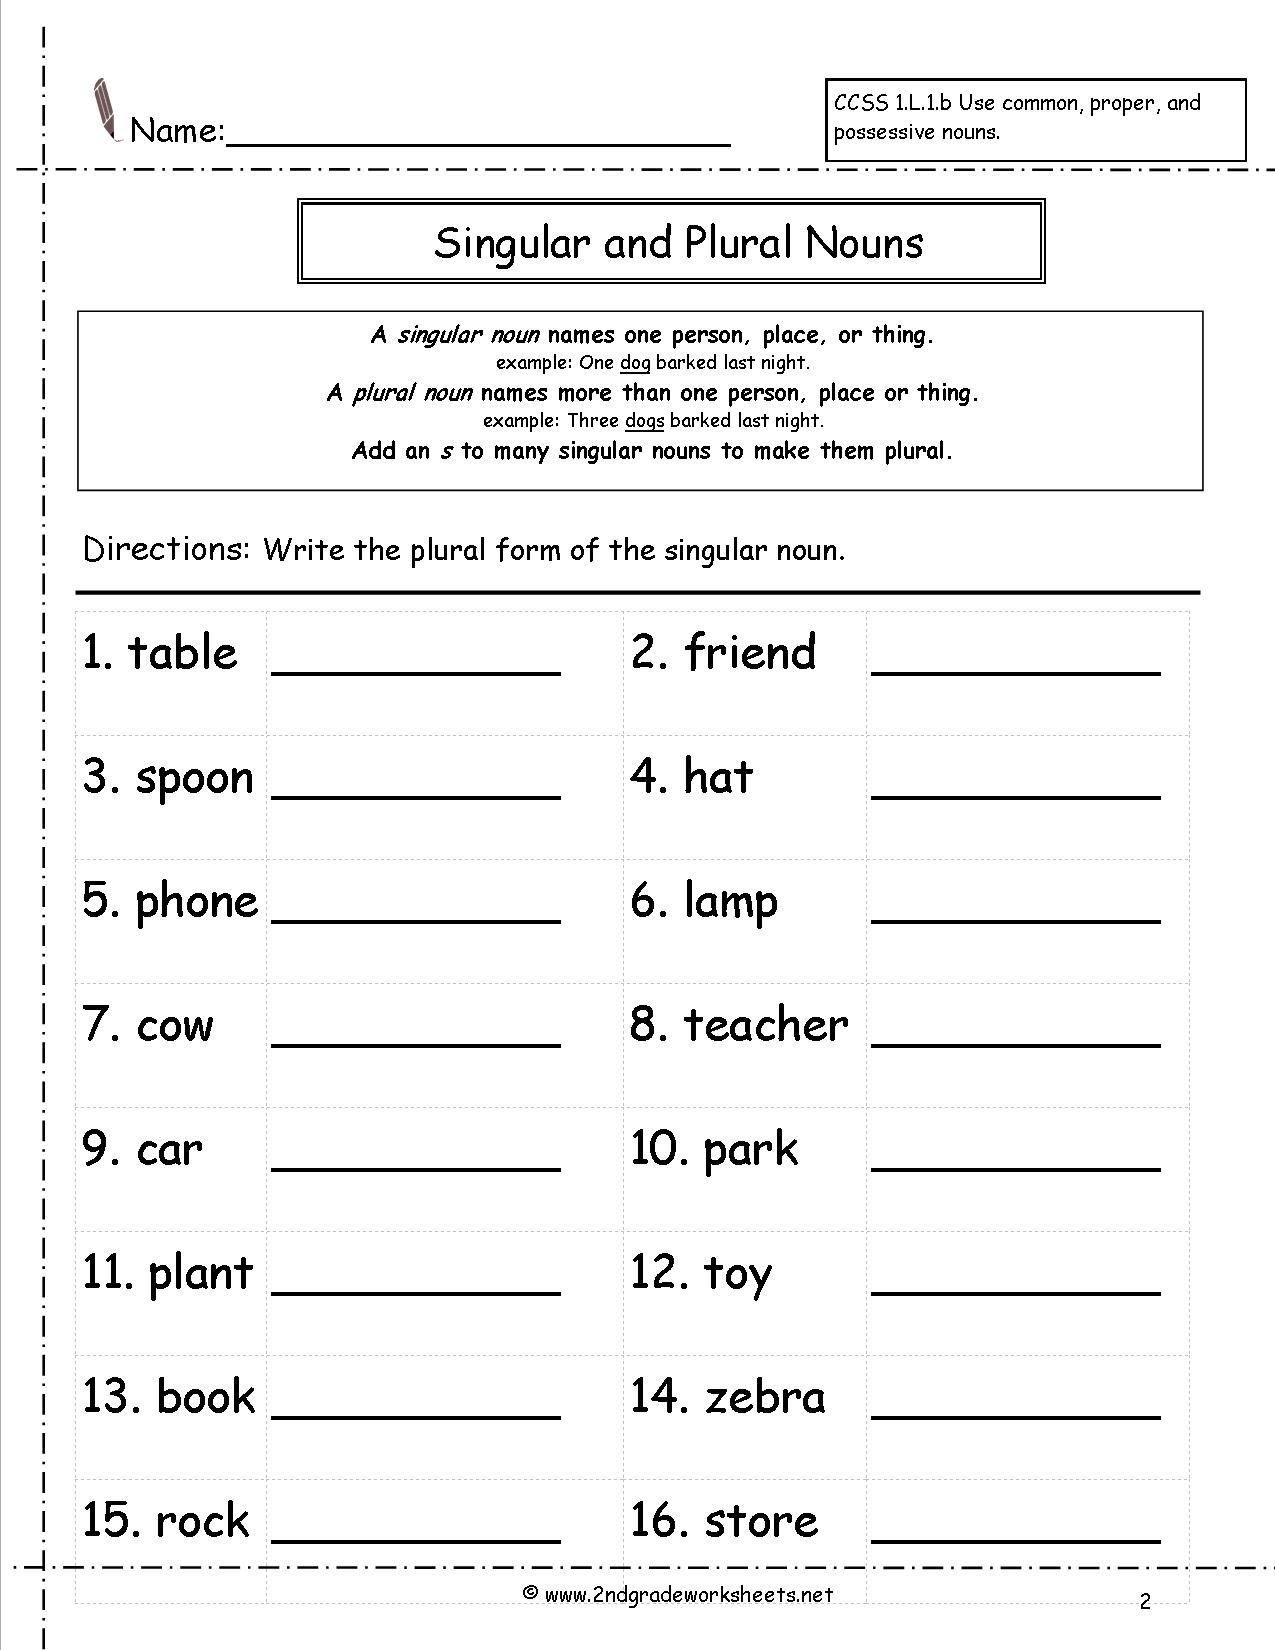 Singular Plural Nouns Worksheets The Best Worksheets Image